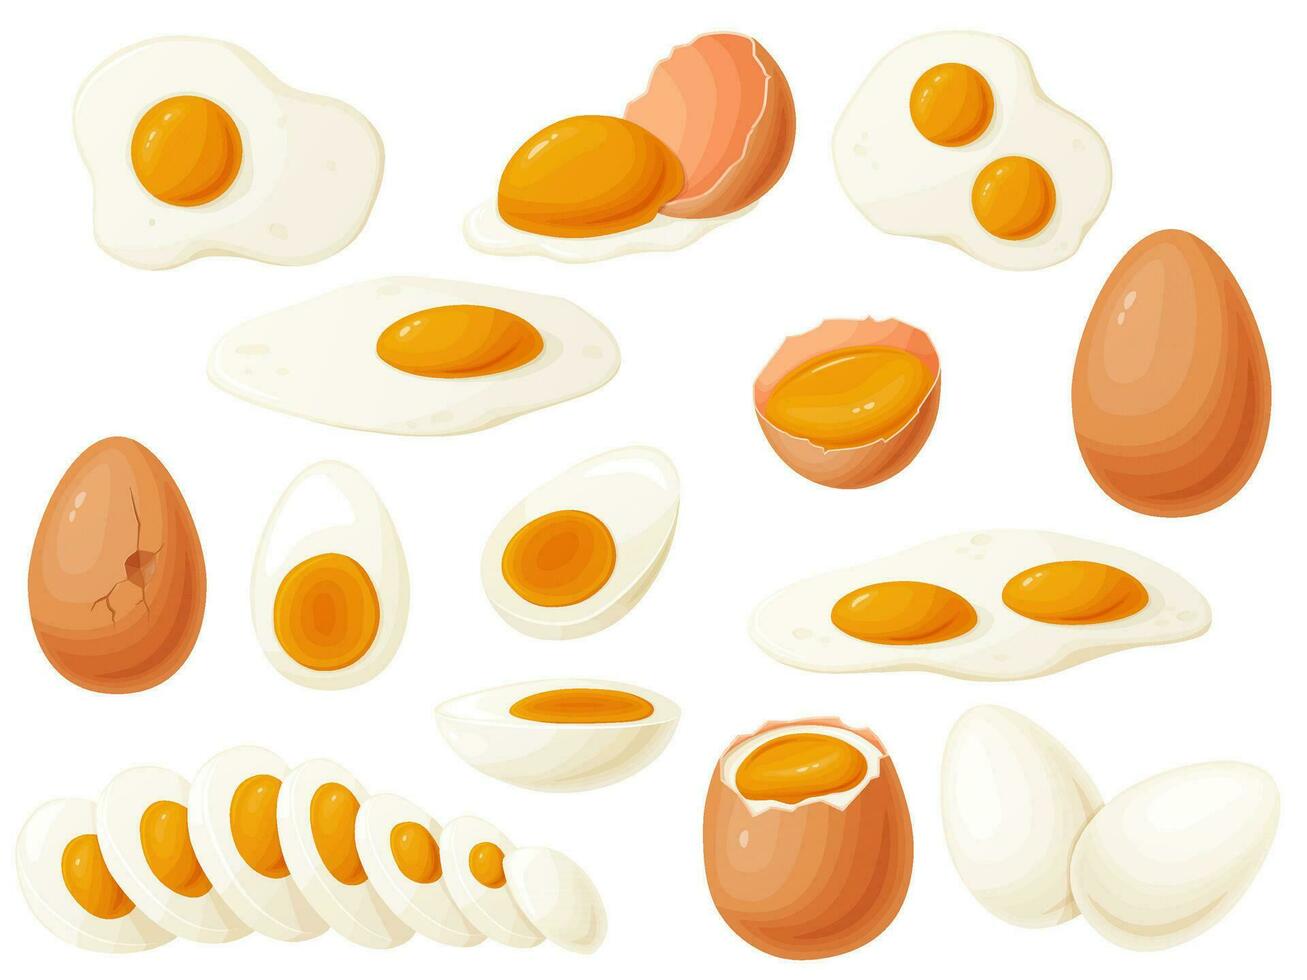 Hähnchen Eier. Backen und Kochen Zutaten. Kochen Zutat zum Frühstück. gesund organisch Lebensmittel. vektor